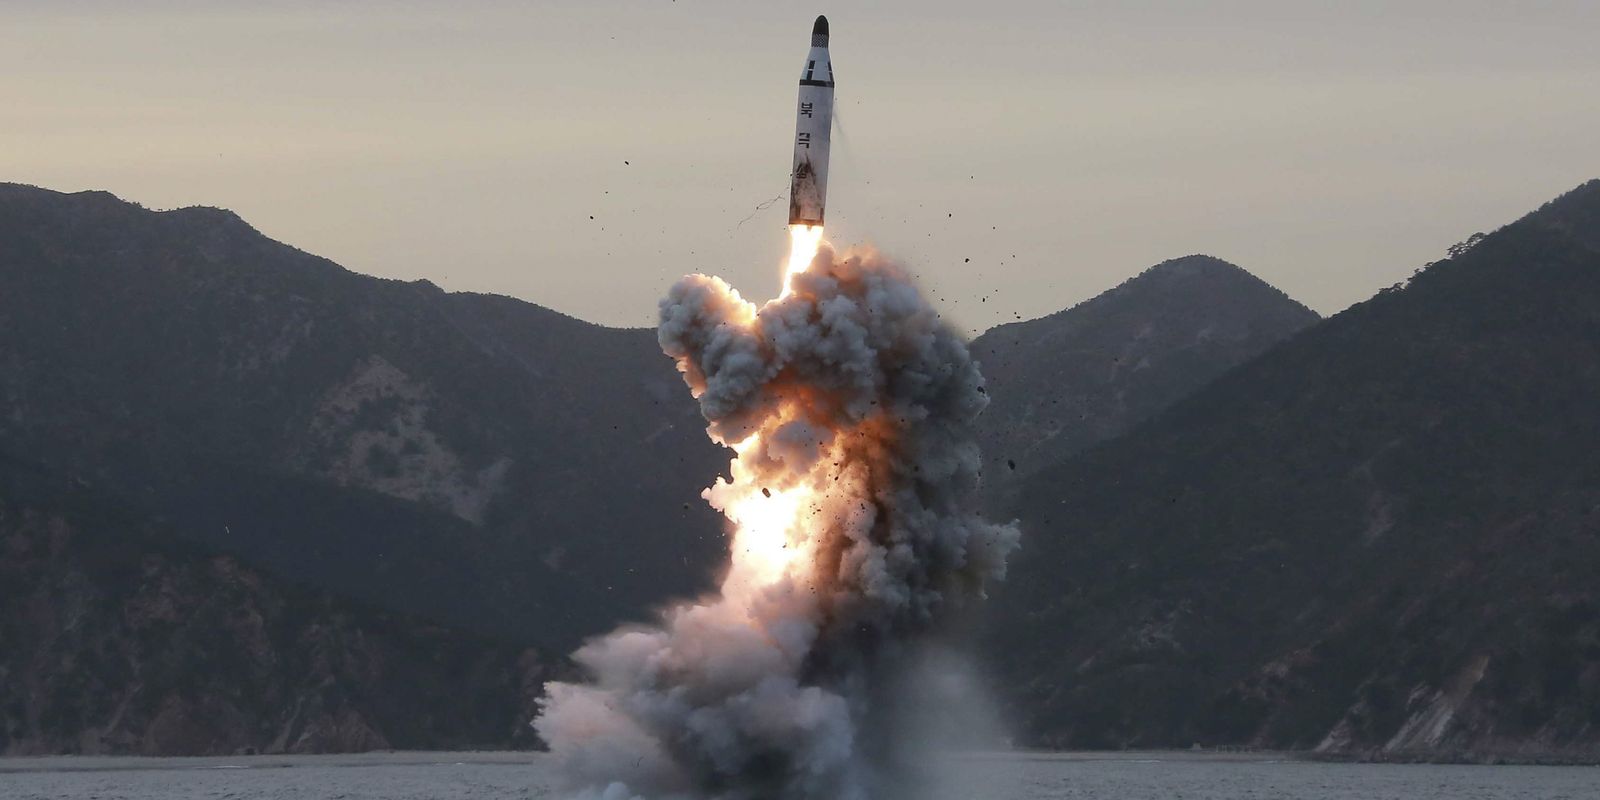 Foto de arquivo divulgada pela Agência Central de Notícias da Coreia do Norte do teste nuclear feito no domingo